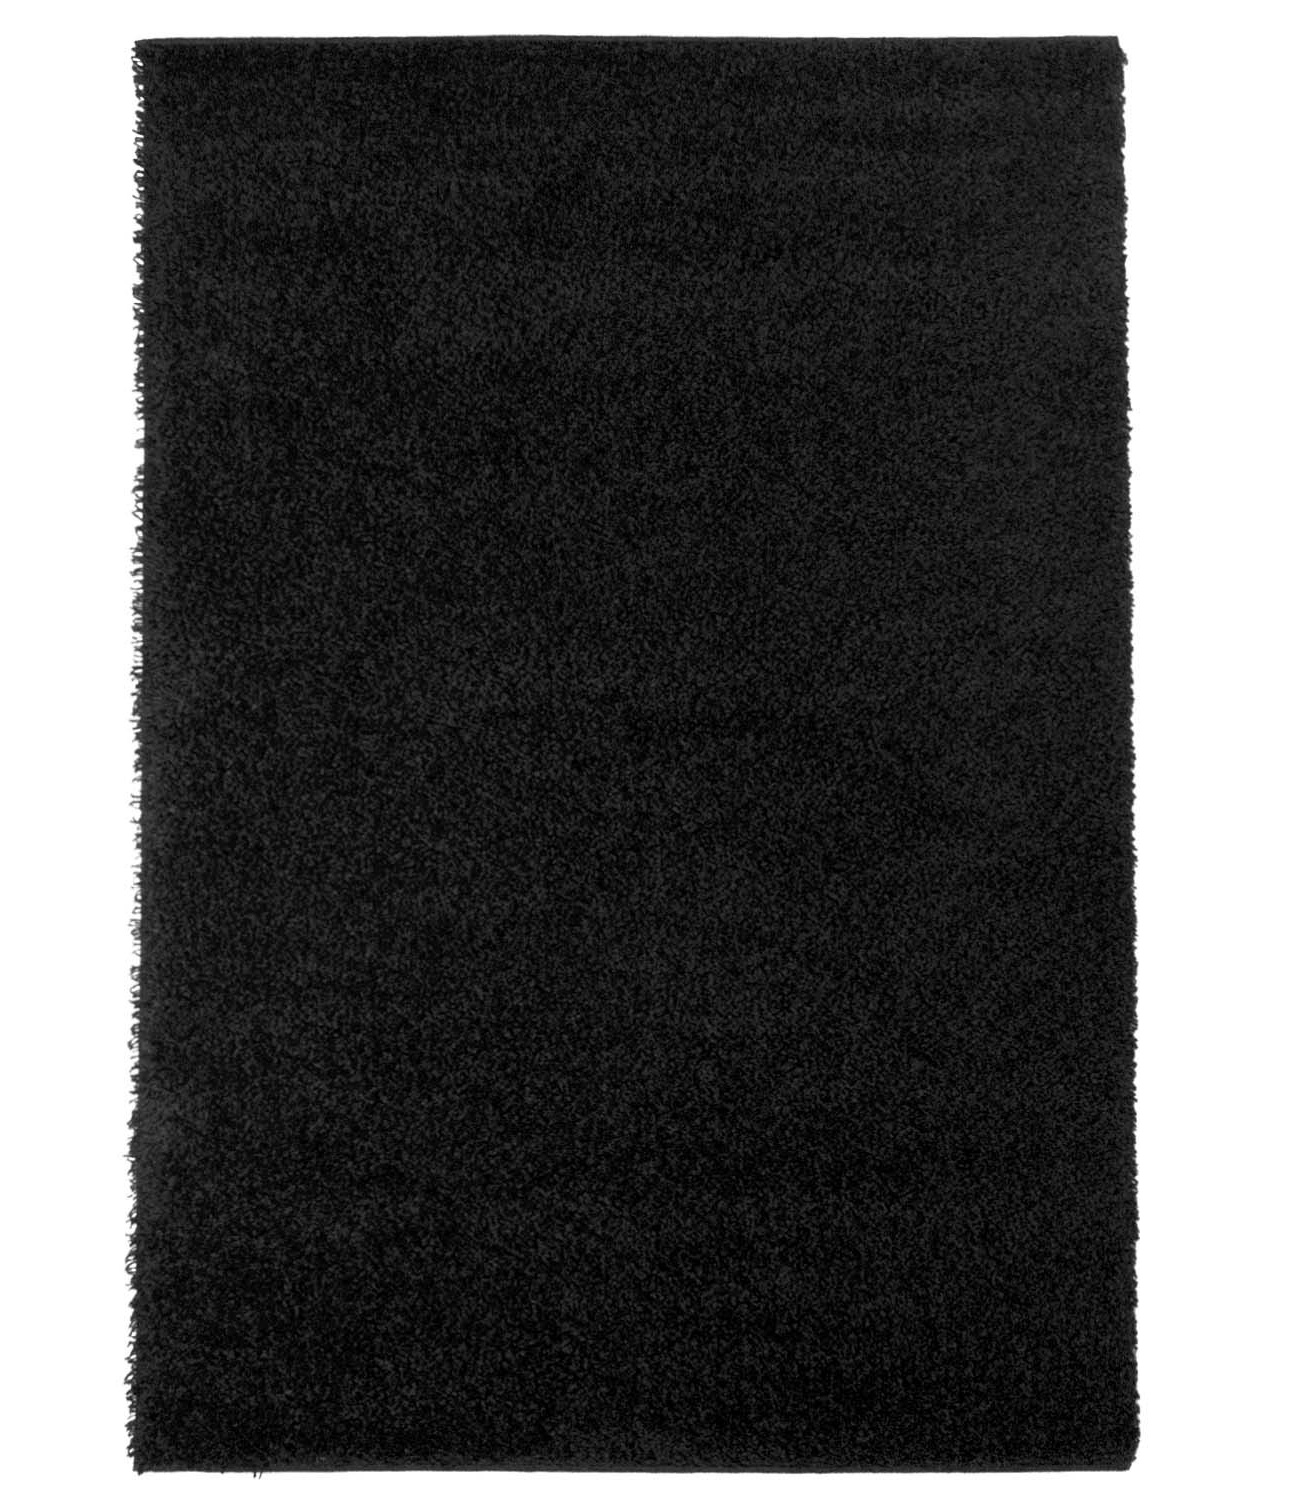 Trim hochflorteppich schwarz shaggy teppich rund hochflor wohnzimmer 60x120 cm 80x 150 cm 140x200 cm 160x230 cm 200x300 cm